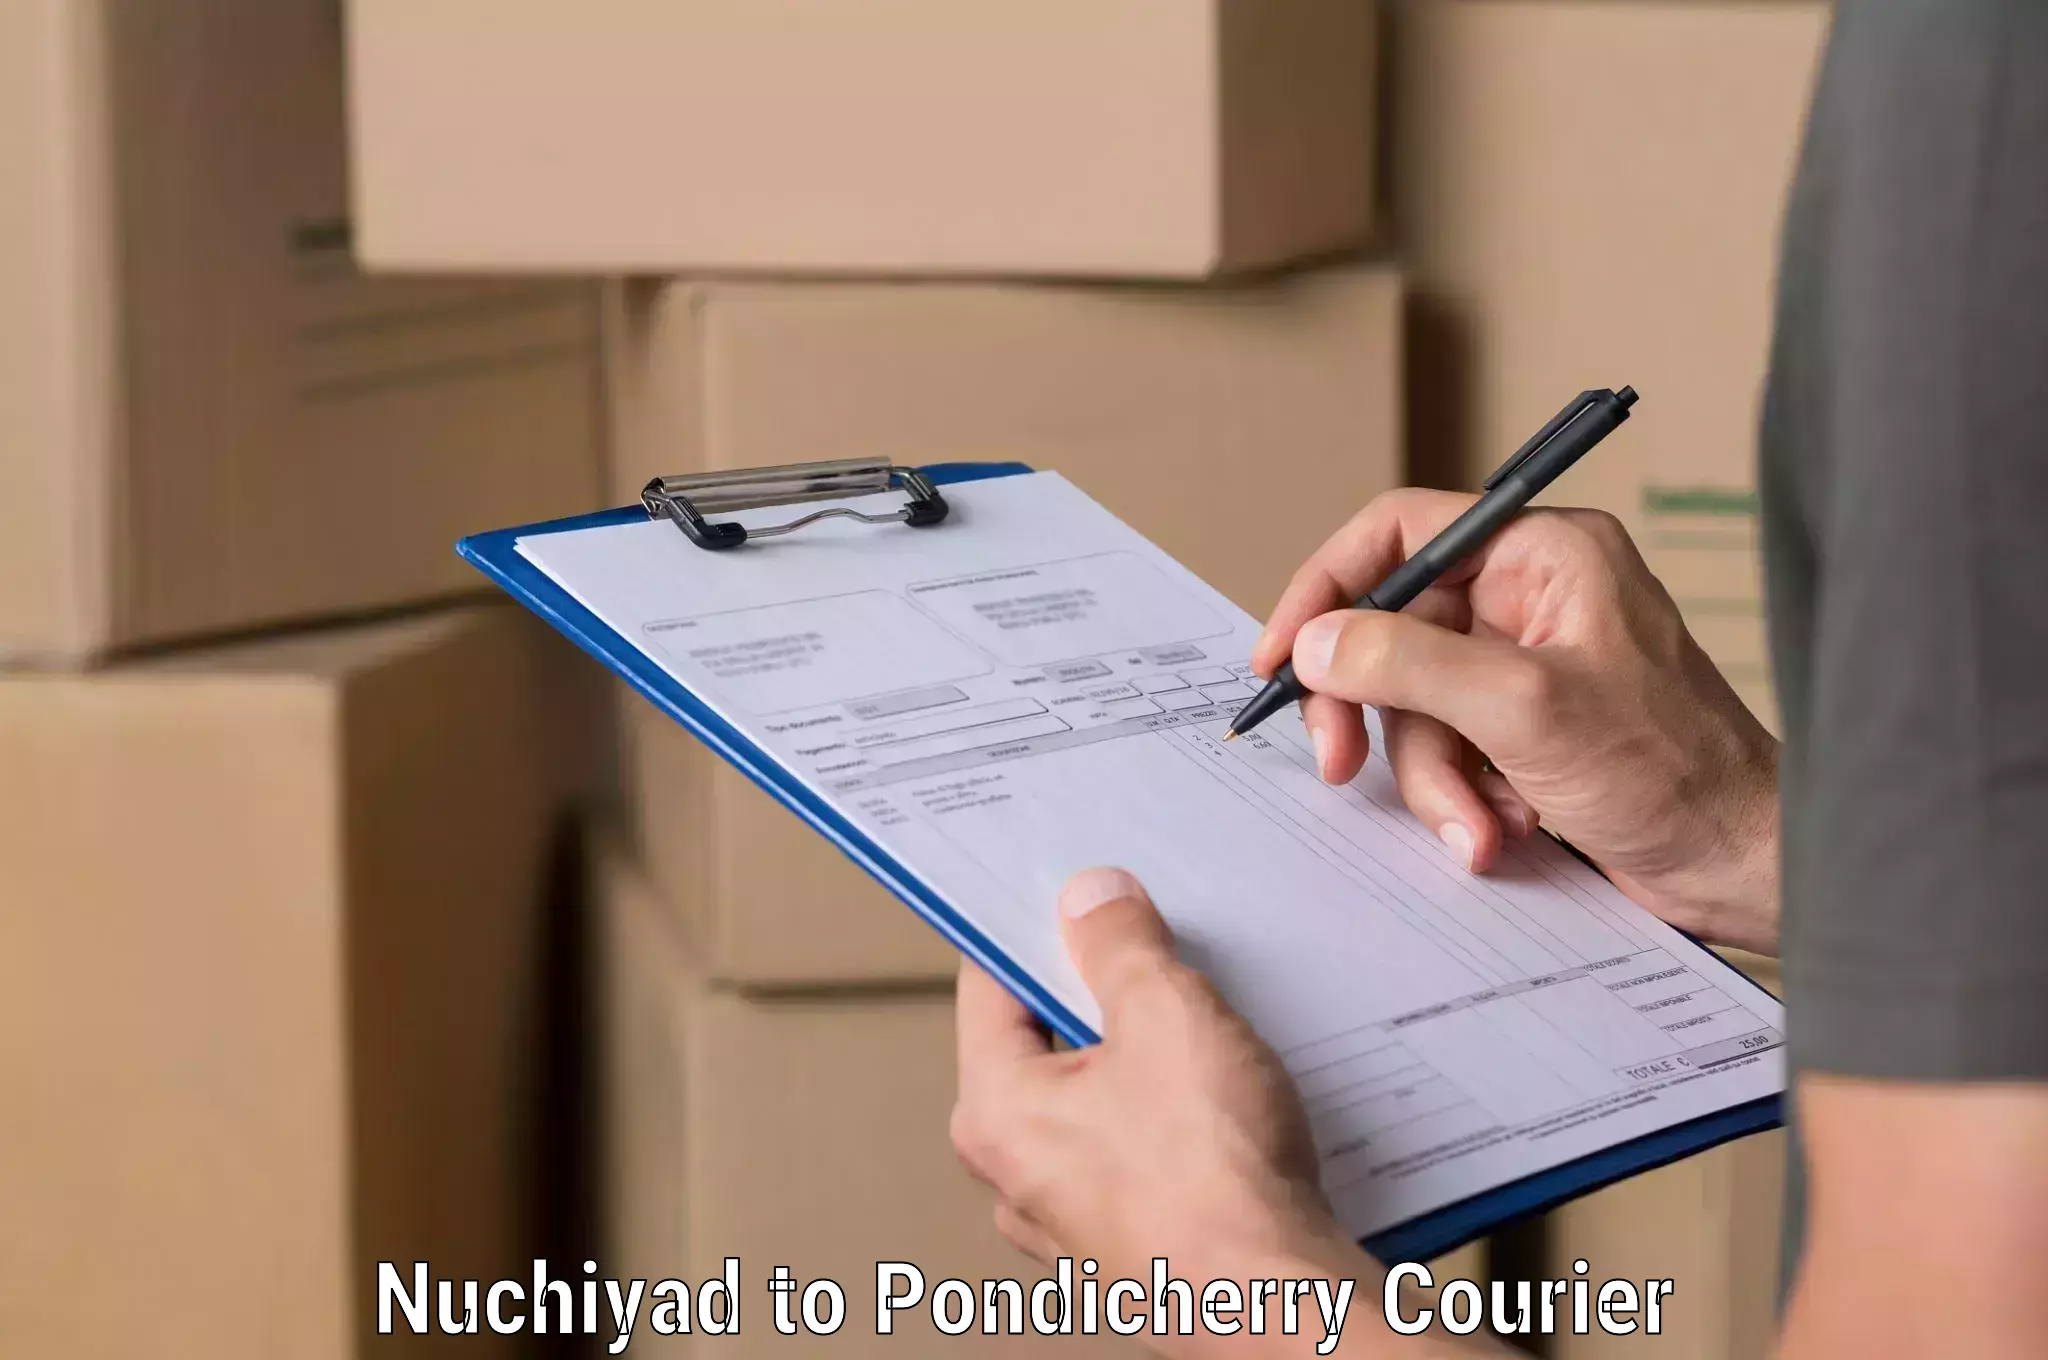 E-commerce fulfillment Nuchiyad to Pondicherry